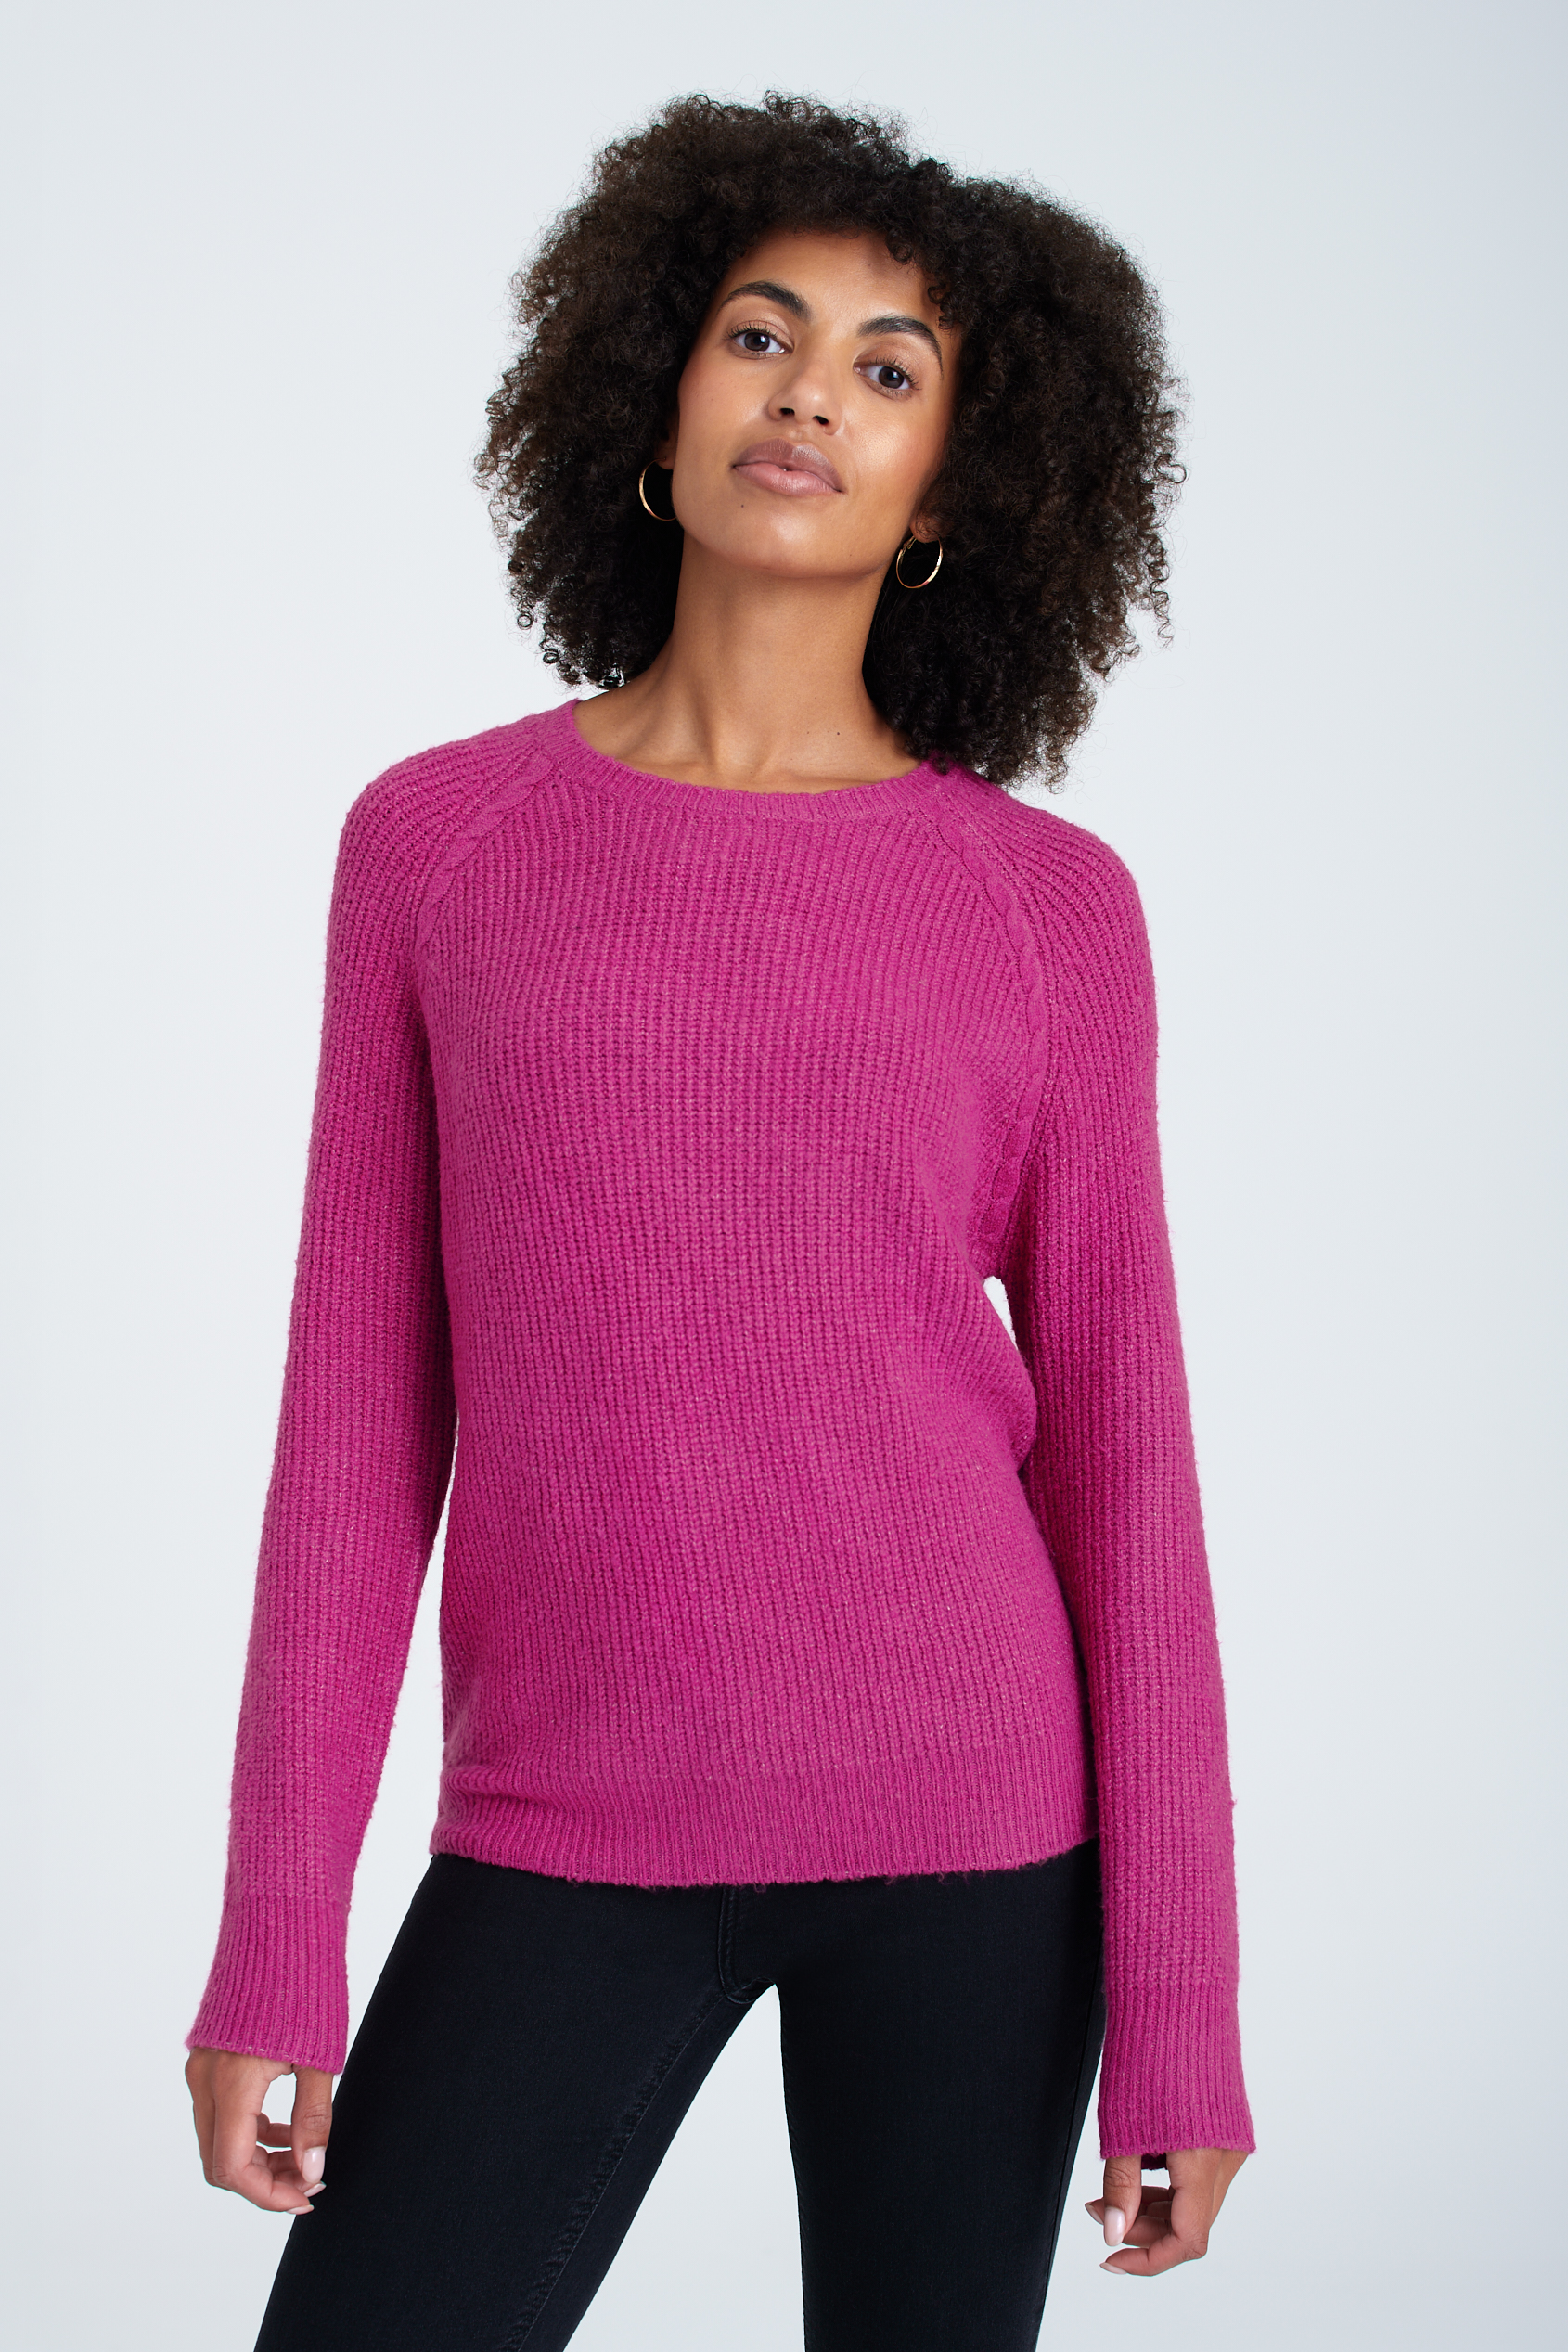 Dopasowany sweter w kolorze fuksji, półokrągły dekolt